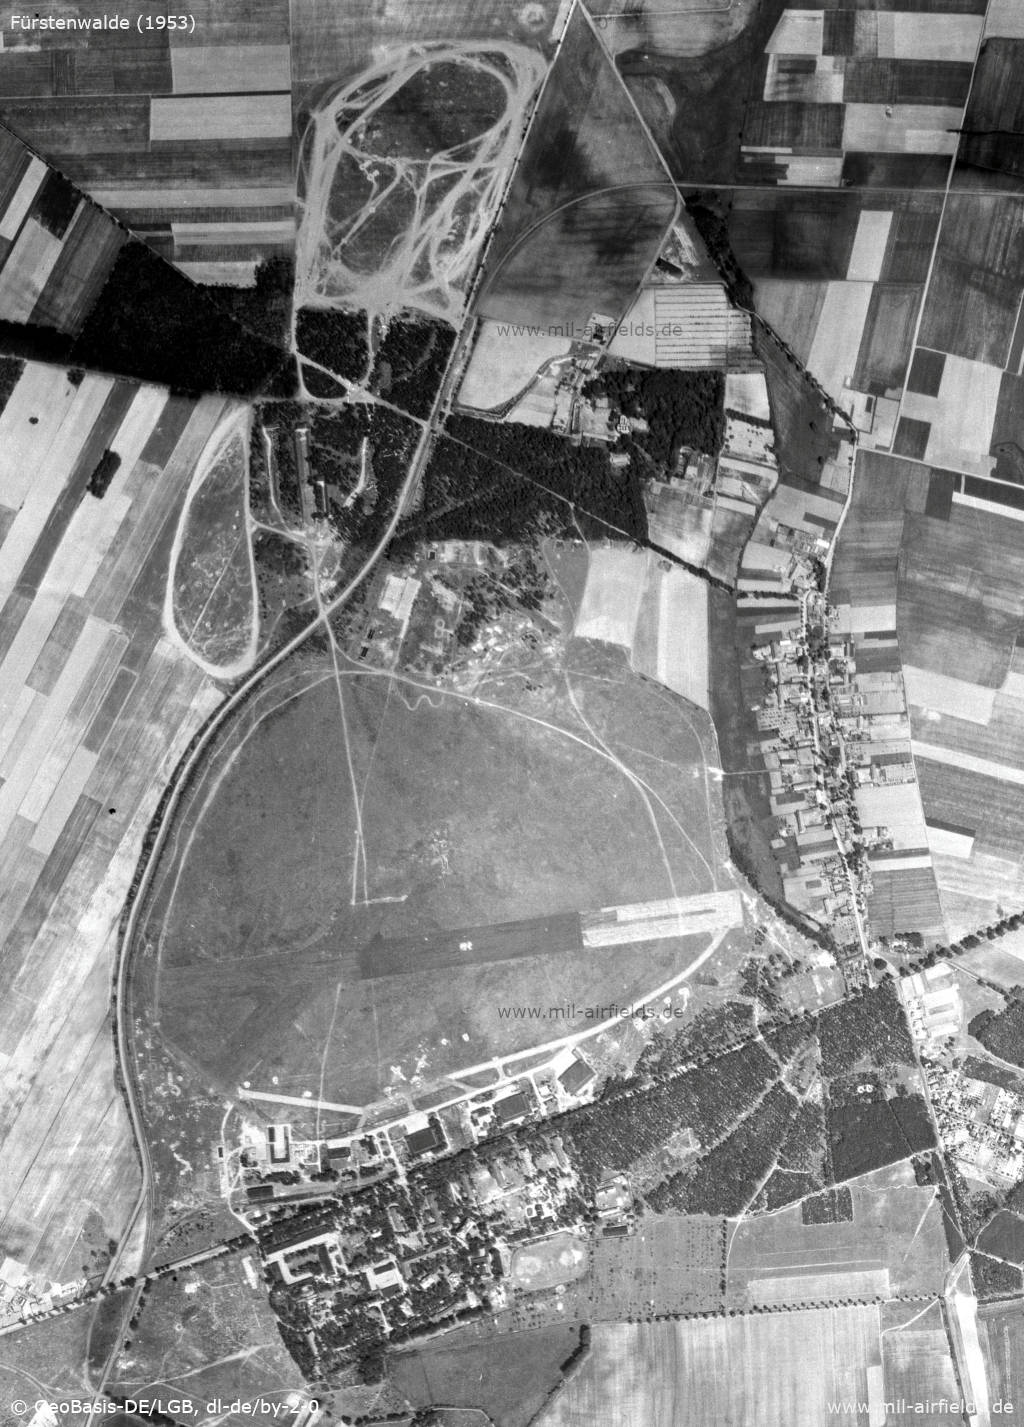 Aerial image Fürstenwalde airbase 1953